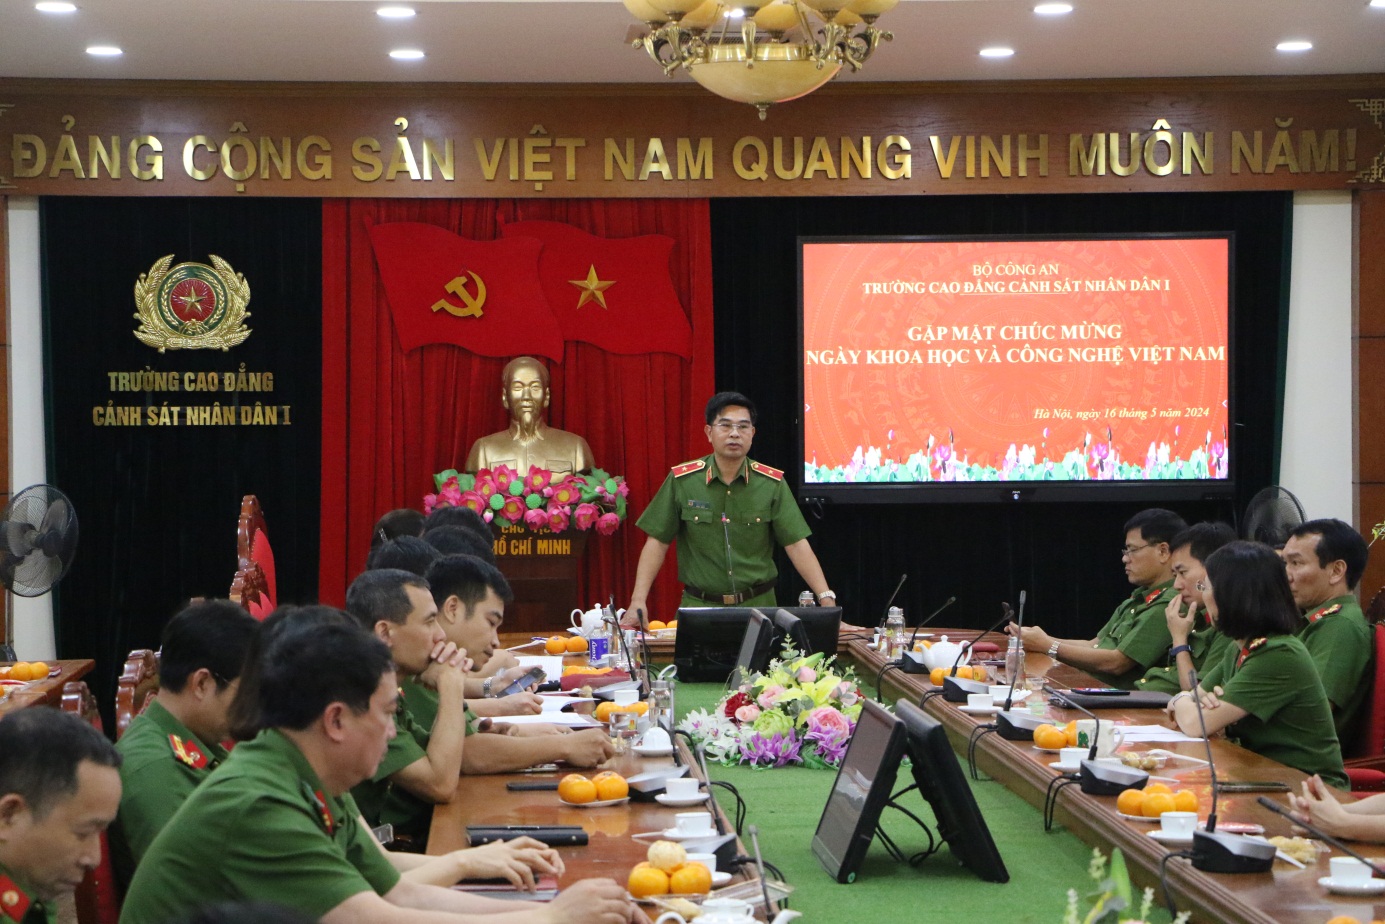 Gặp mặt chúc mừng ngày Khoa học và Công nghệ Việt nam